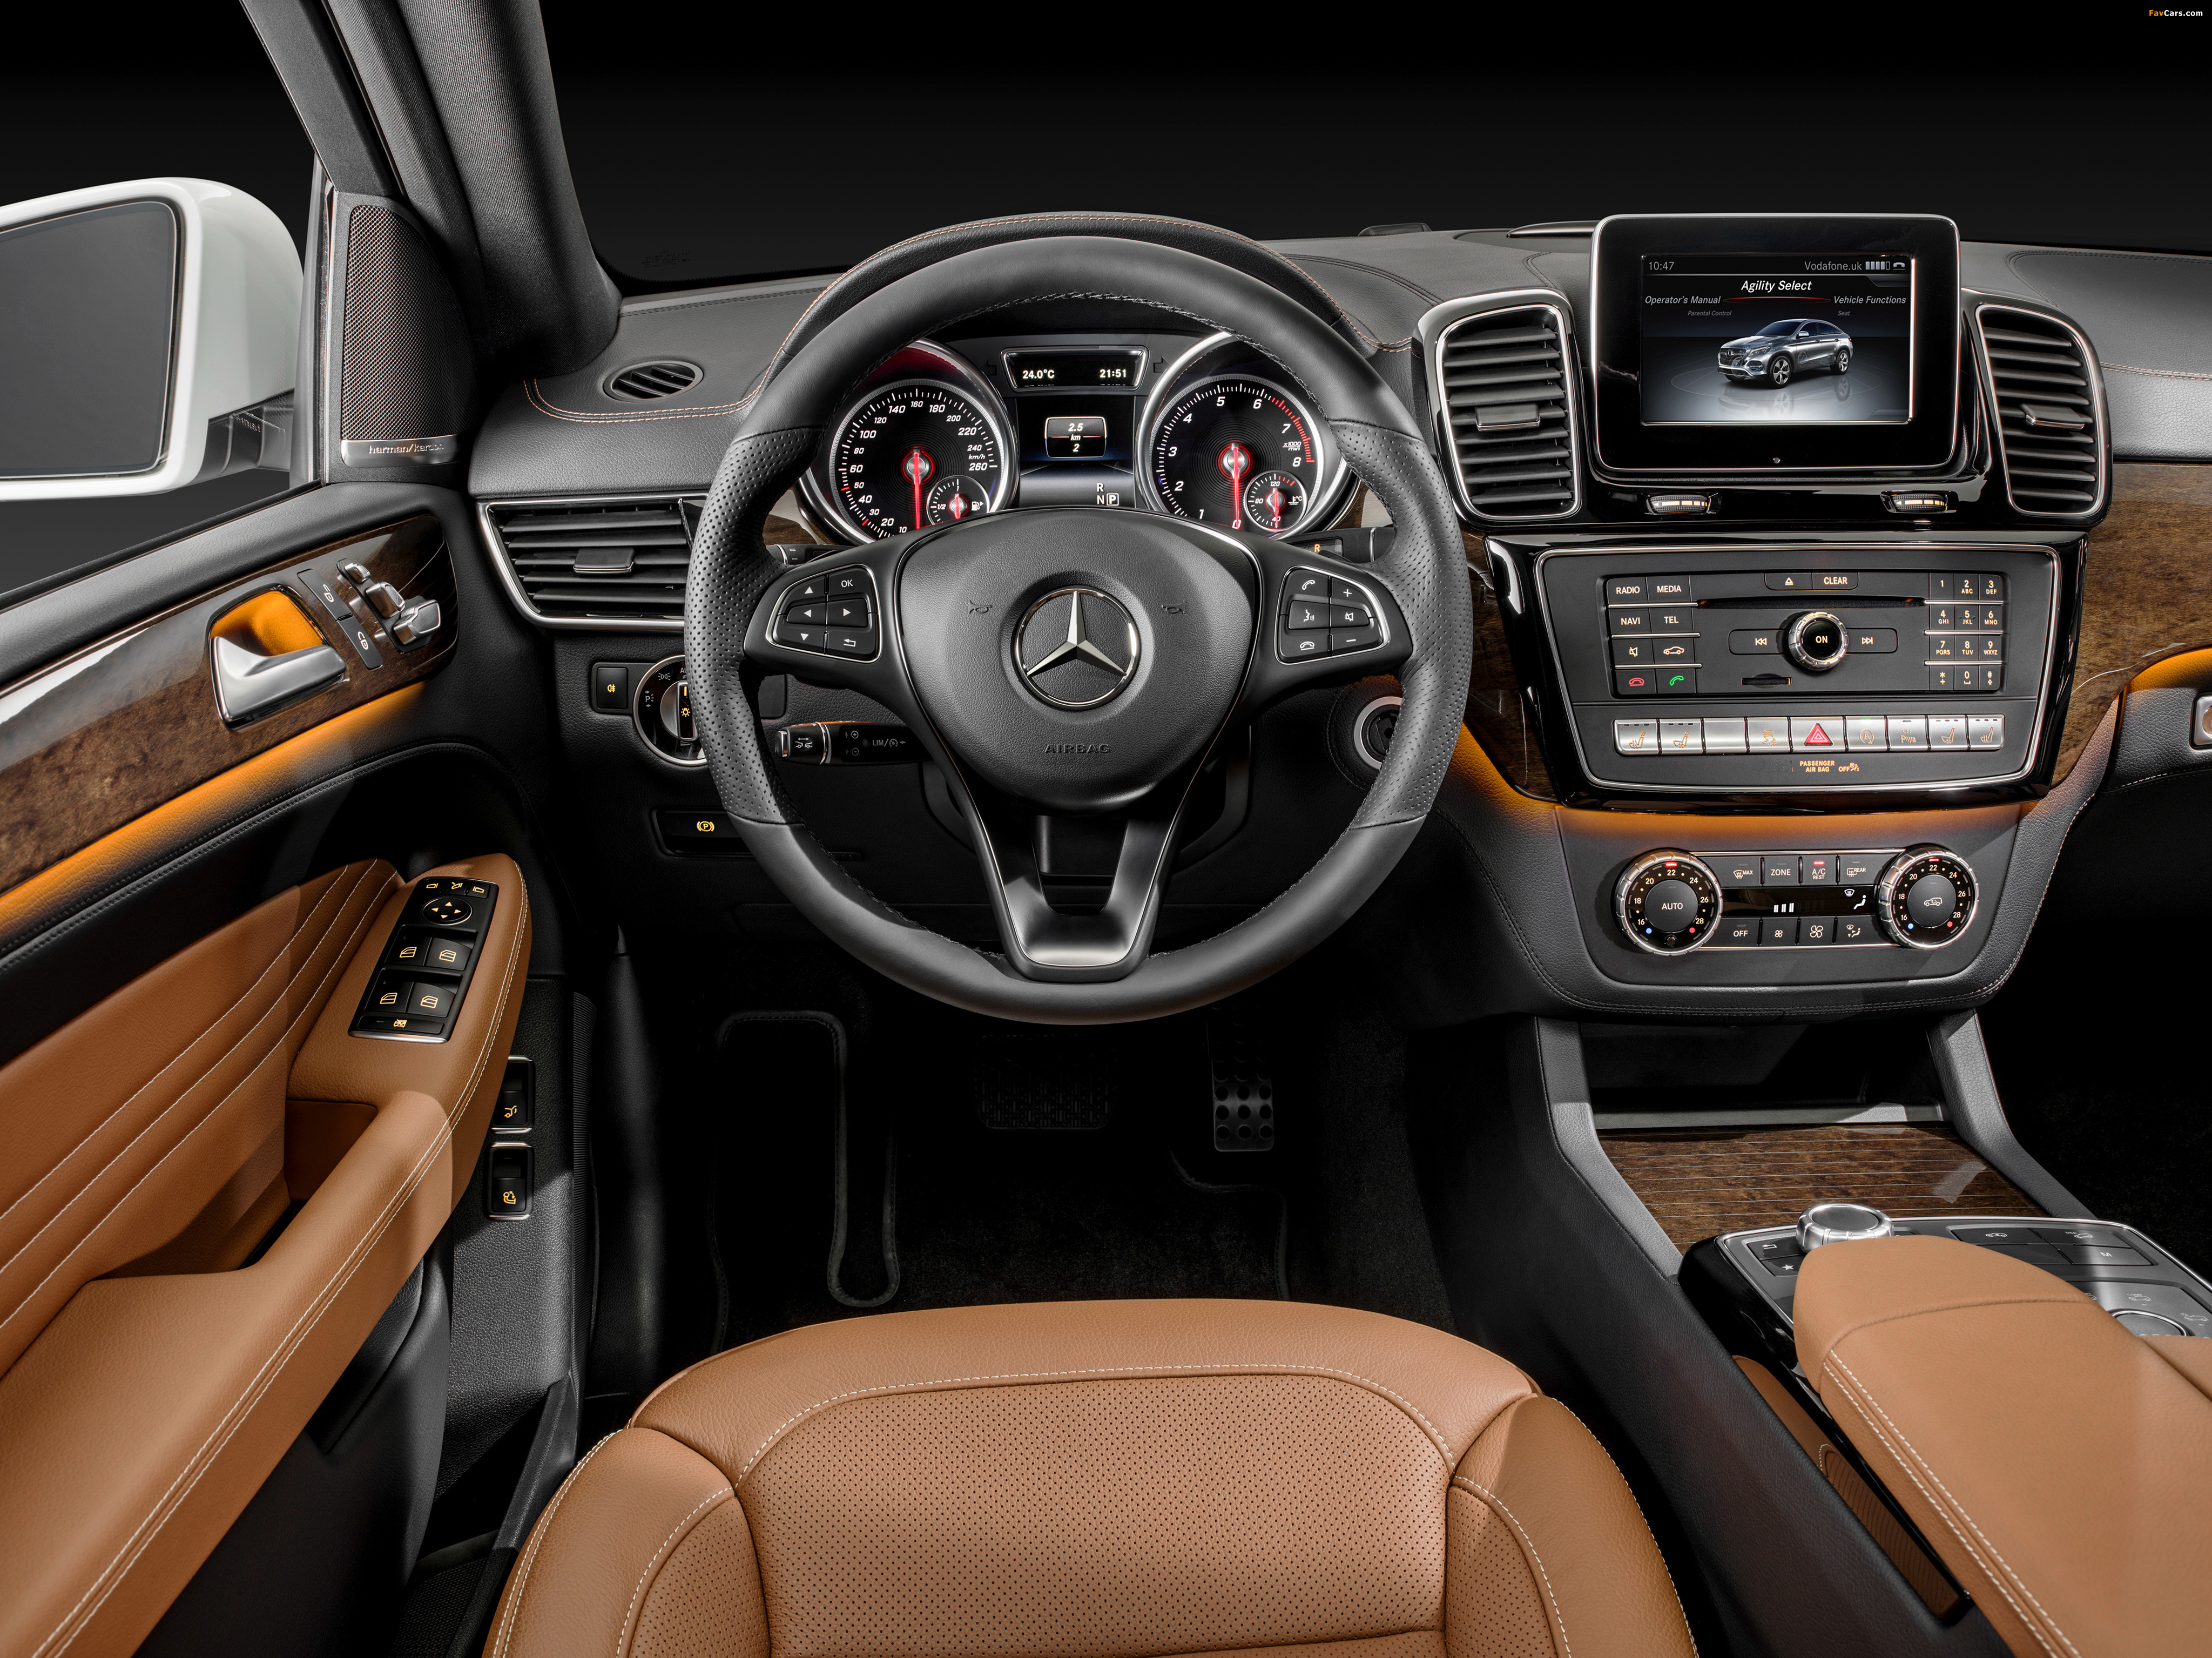 Mercedes-Benz GLE 400 4MATIC Coupé (C292) 2015 images (4096 x 3070)